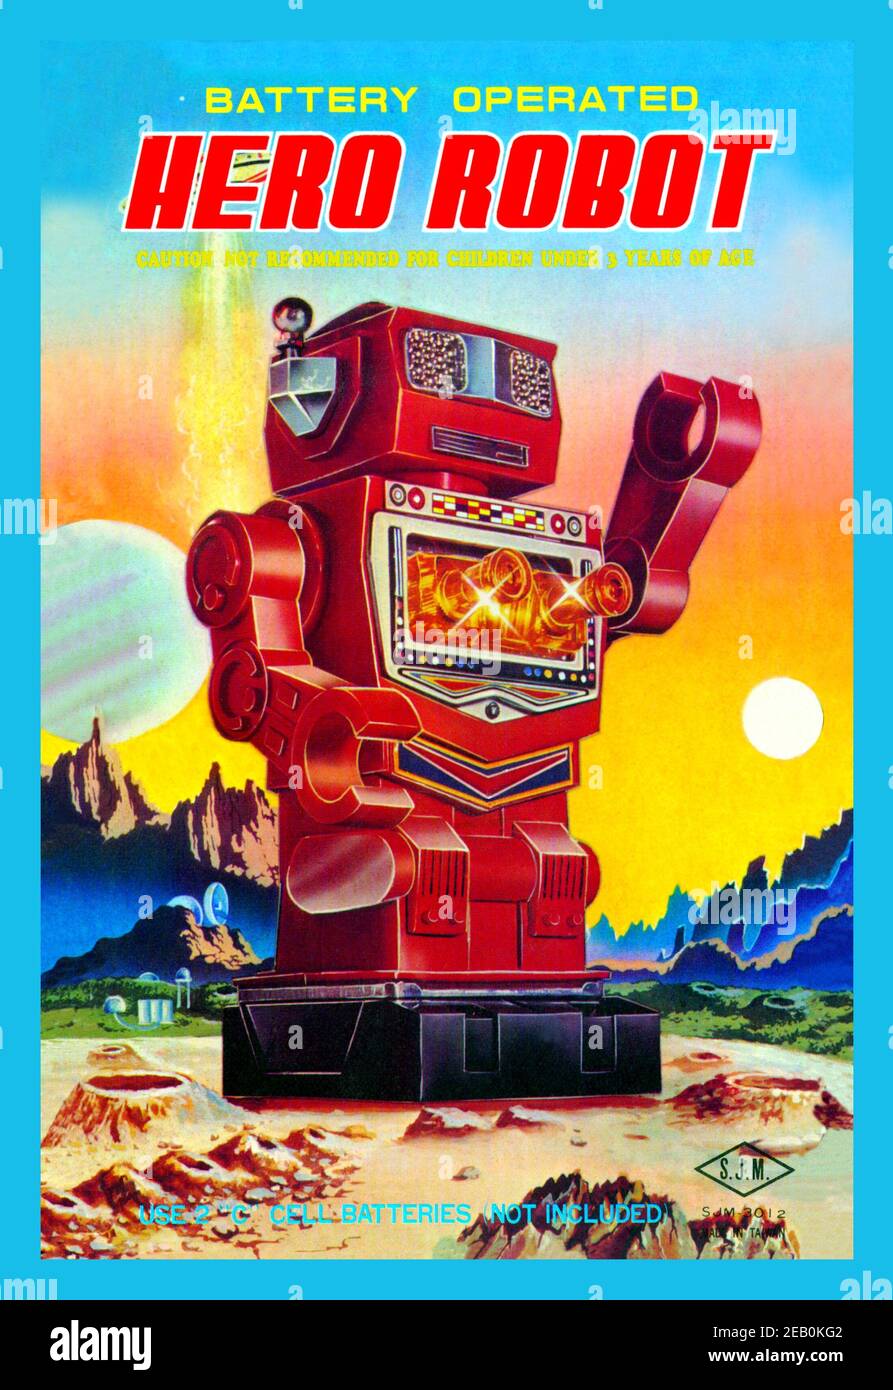 Azionato a batteria Robot Hero Foto Stock